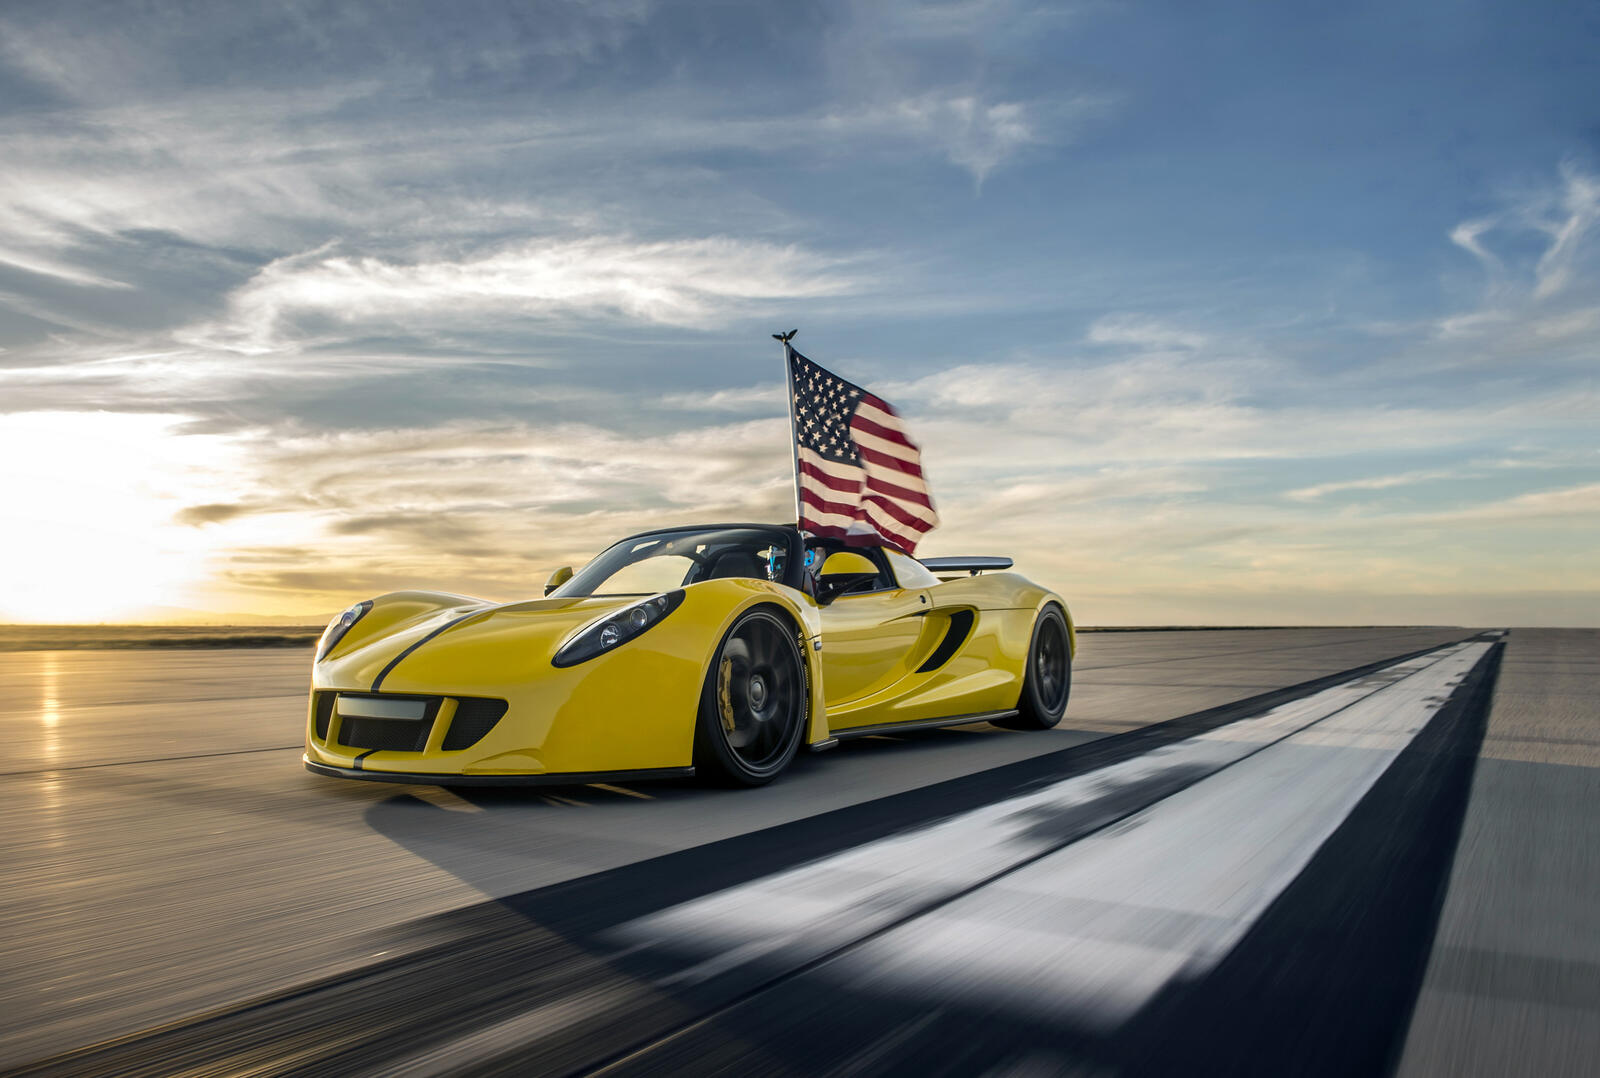 Бесплатное фото Желтый Hennessey Venom GT едет по взлетной полосе с американским флагом который развивается на ветру